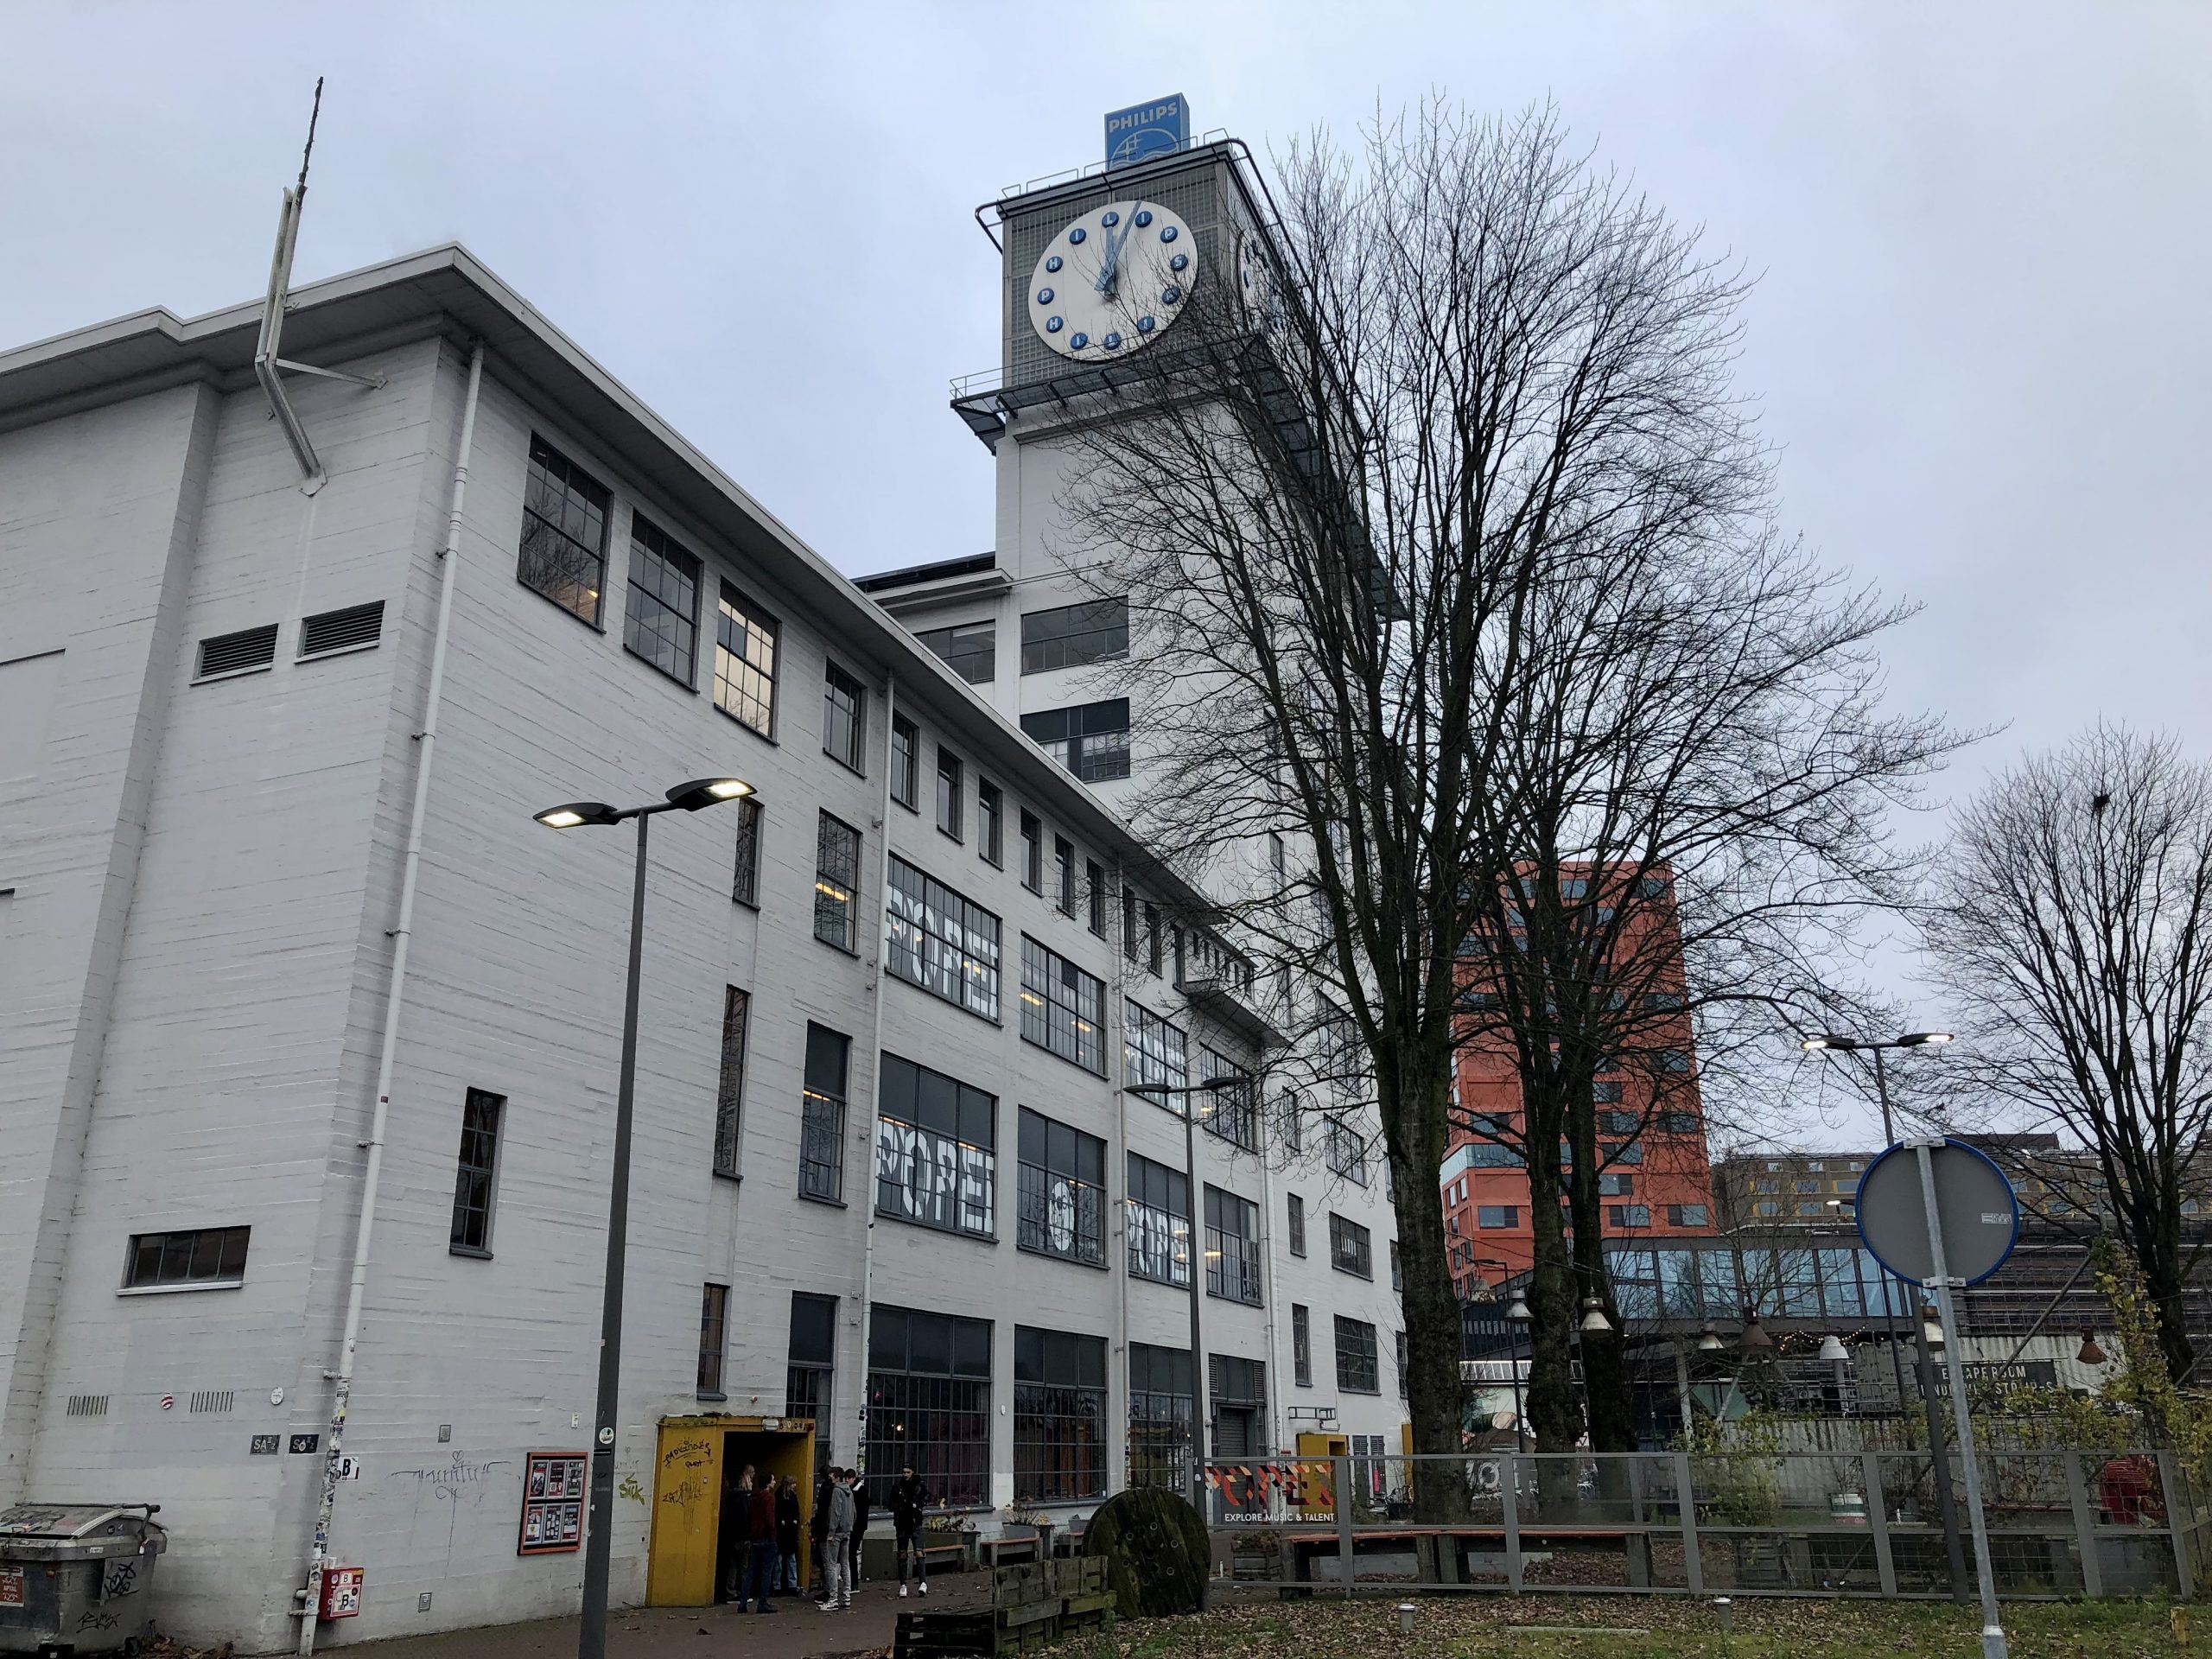 Klokgebouw in startup-stad Eindhoven